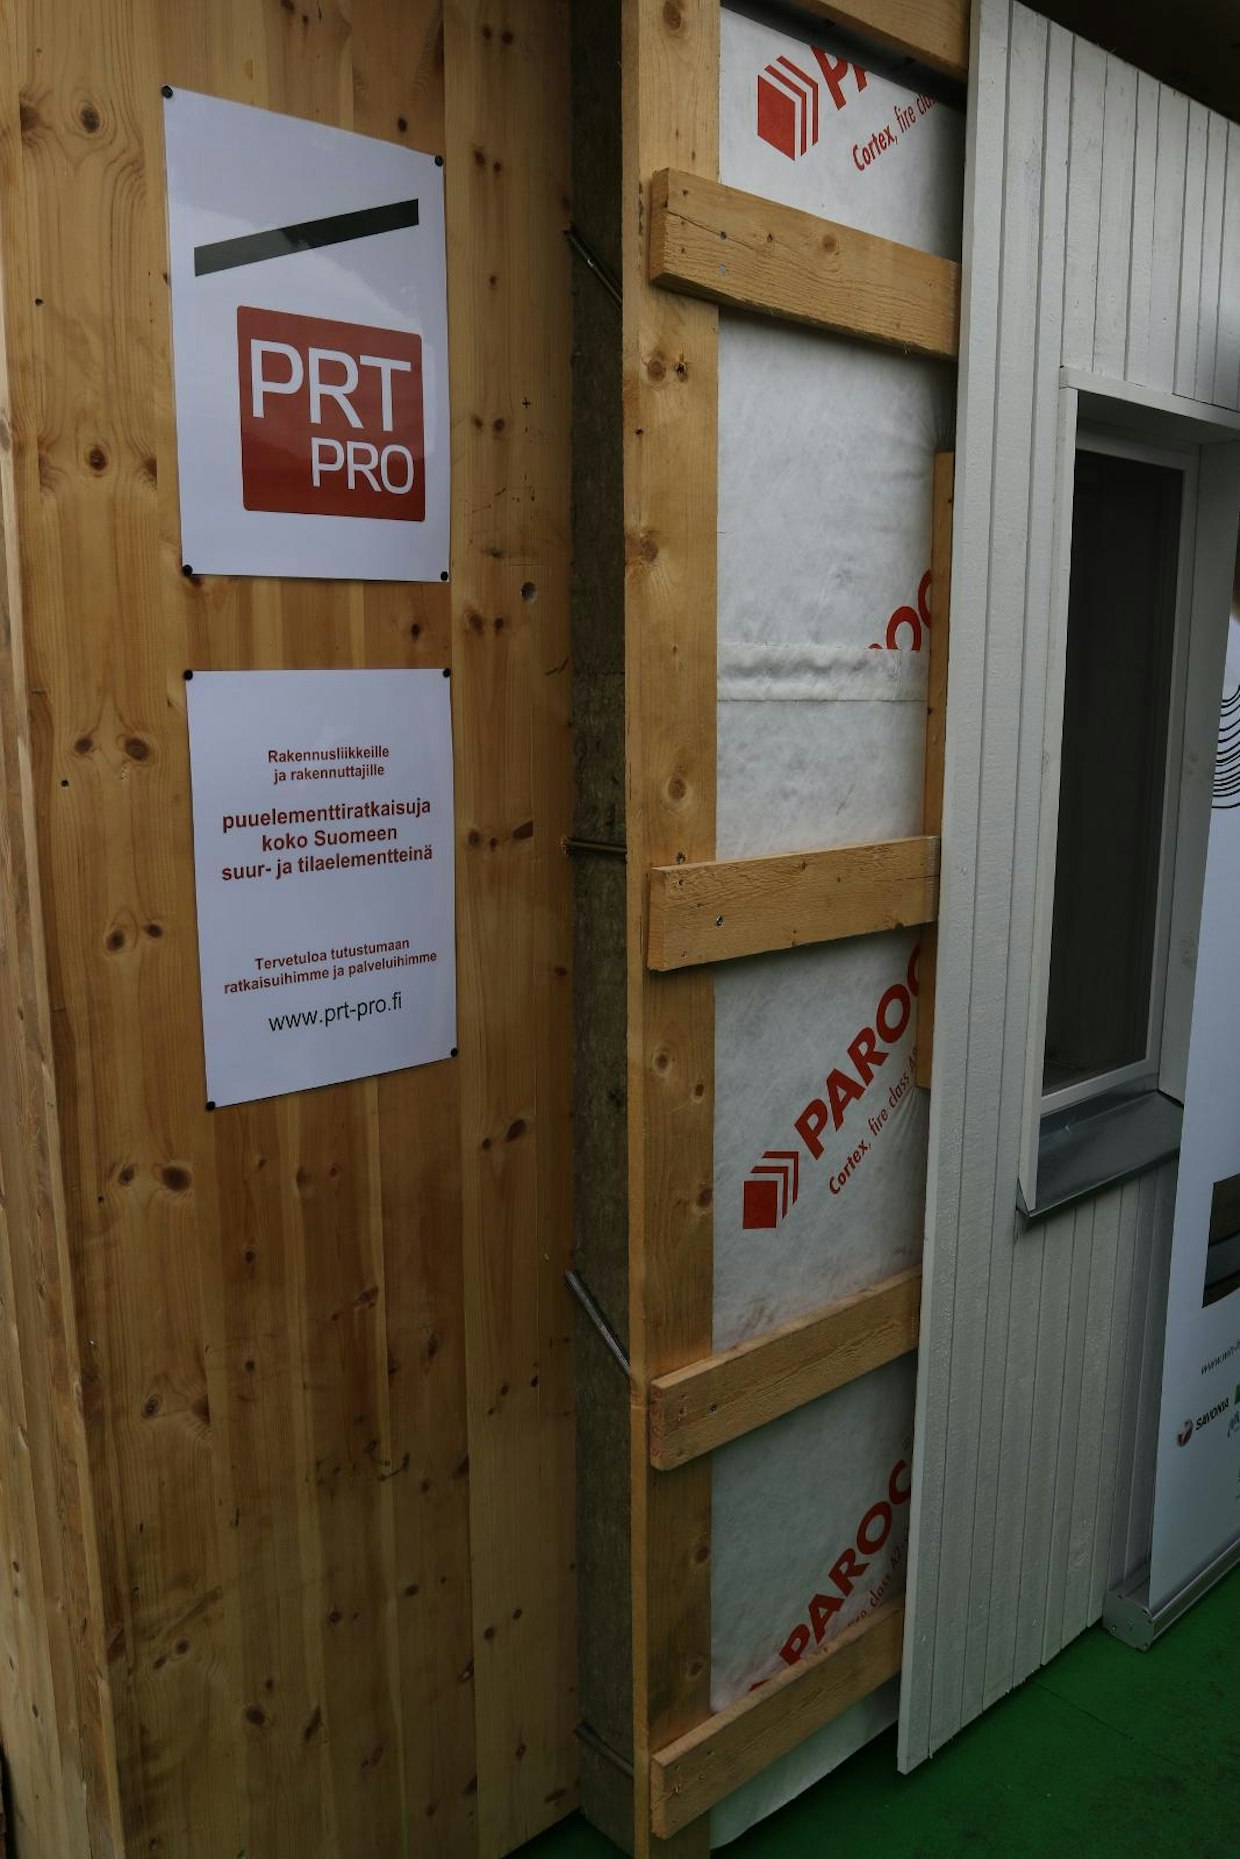 PRT-Pro esitteli puulevyihin pohjautuvaa suurelementtirakennustekniikkaa, joka sopii puukerrostaloihin. CLT-levyyn on kiinnitetty eristyslevy ja puurakenteinen ranka. Ulommaiseksi asennetaan puuverhous. www.prt-pro.fi